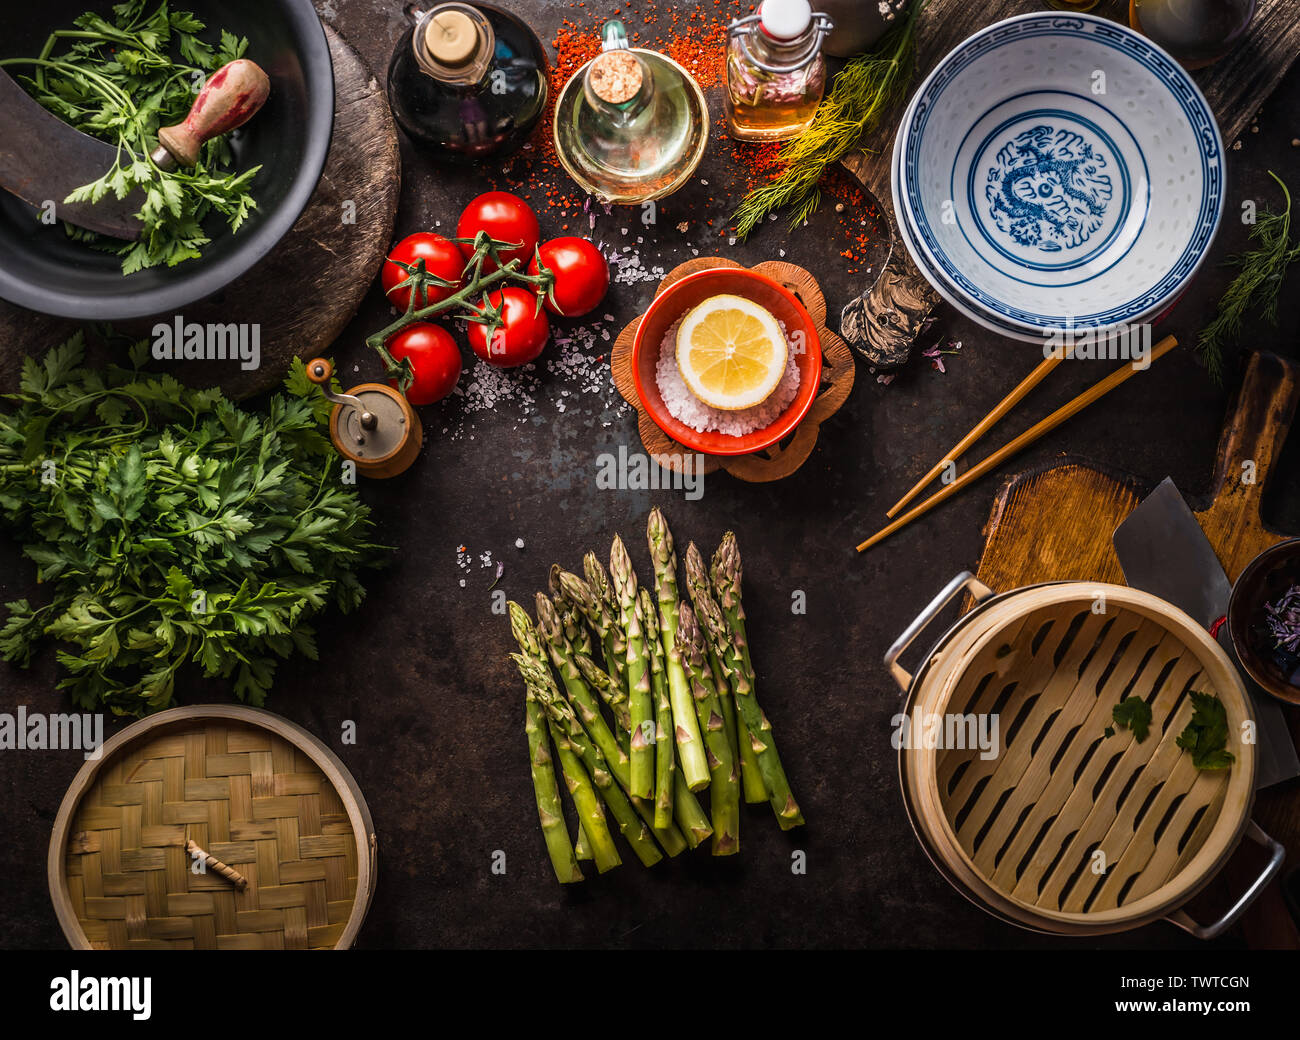 Gli asparagi verdi mazzetto , bambù asiatico vaporizzatore ed ingredienti freschi e saporiti per vegetariani sani mangiare e cucinare in stile asiatico sul tavolo rustico con Foto Stock